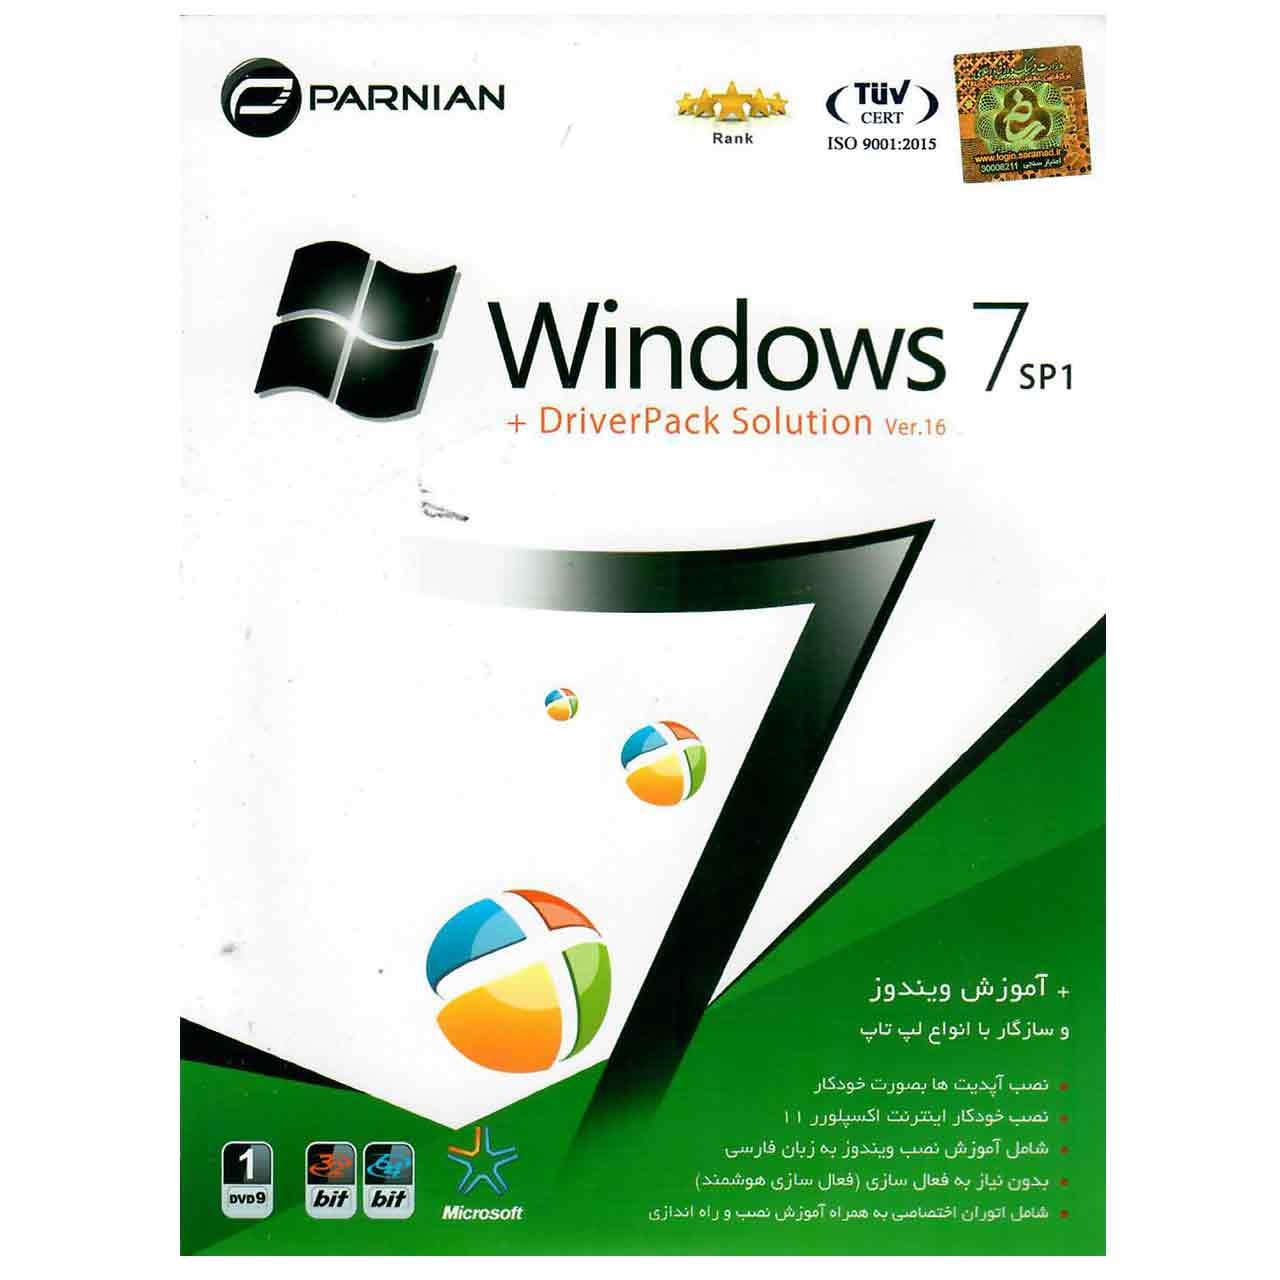 سیستم عامل Windows 7 SP1 به همراه Driver Pack Solution Ver.16 نشر پرنیان